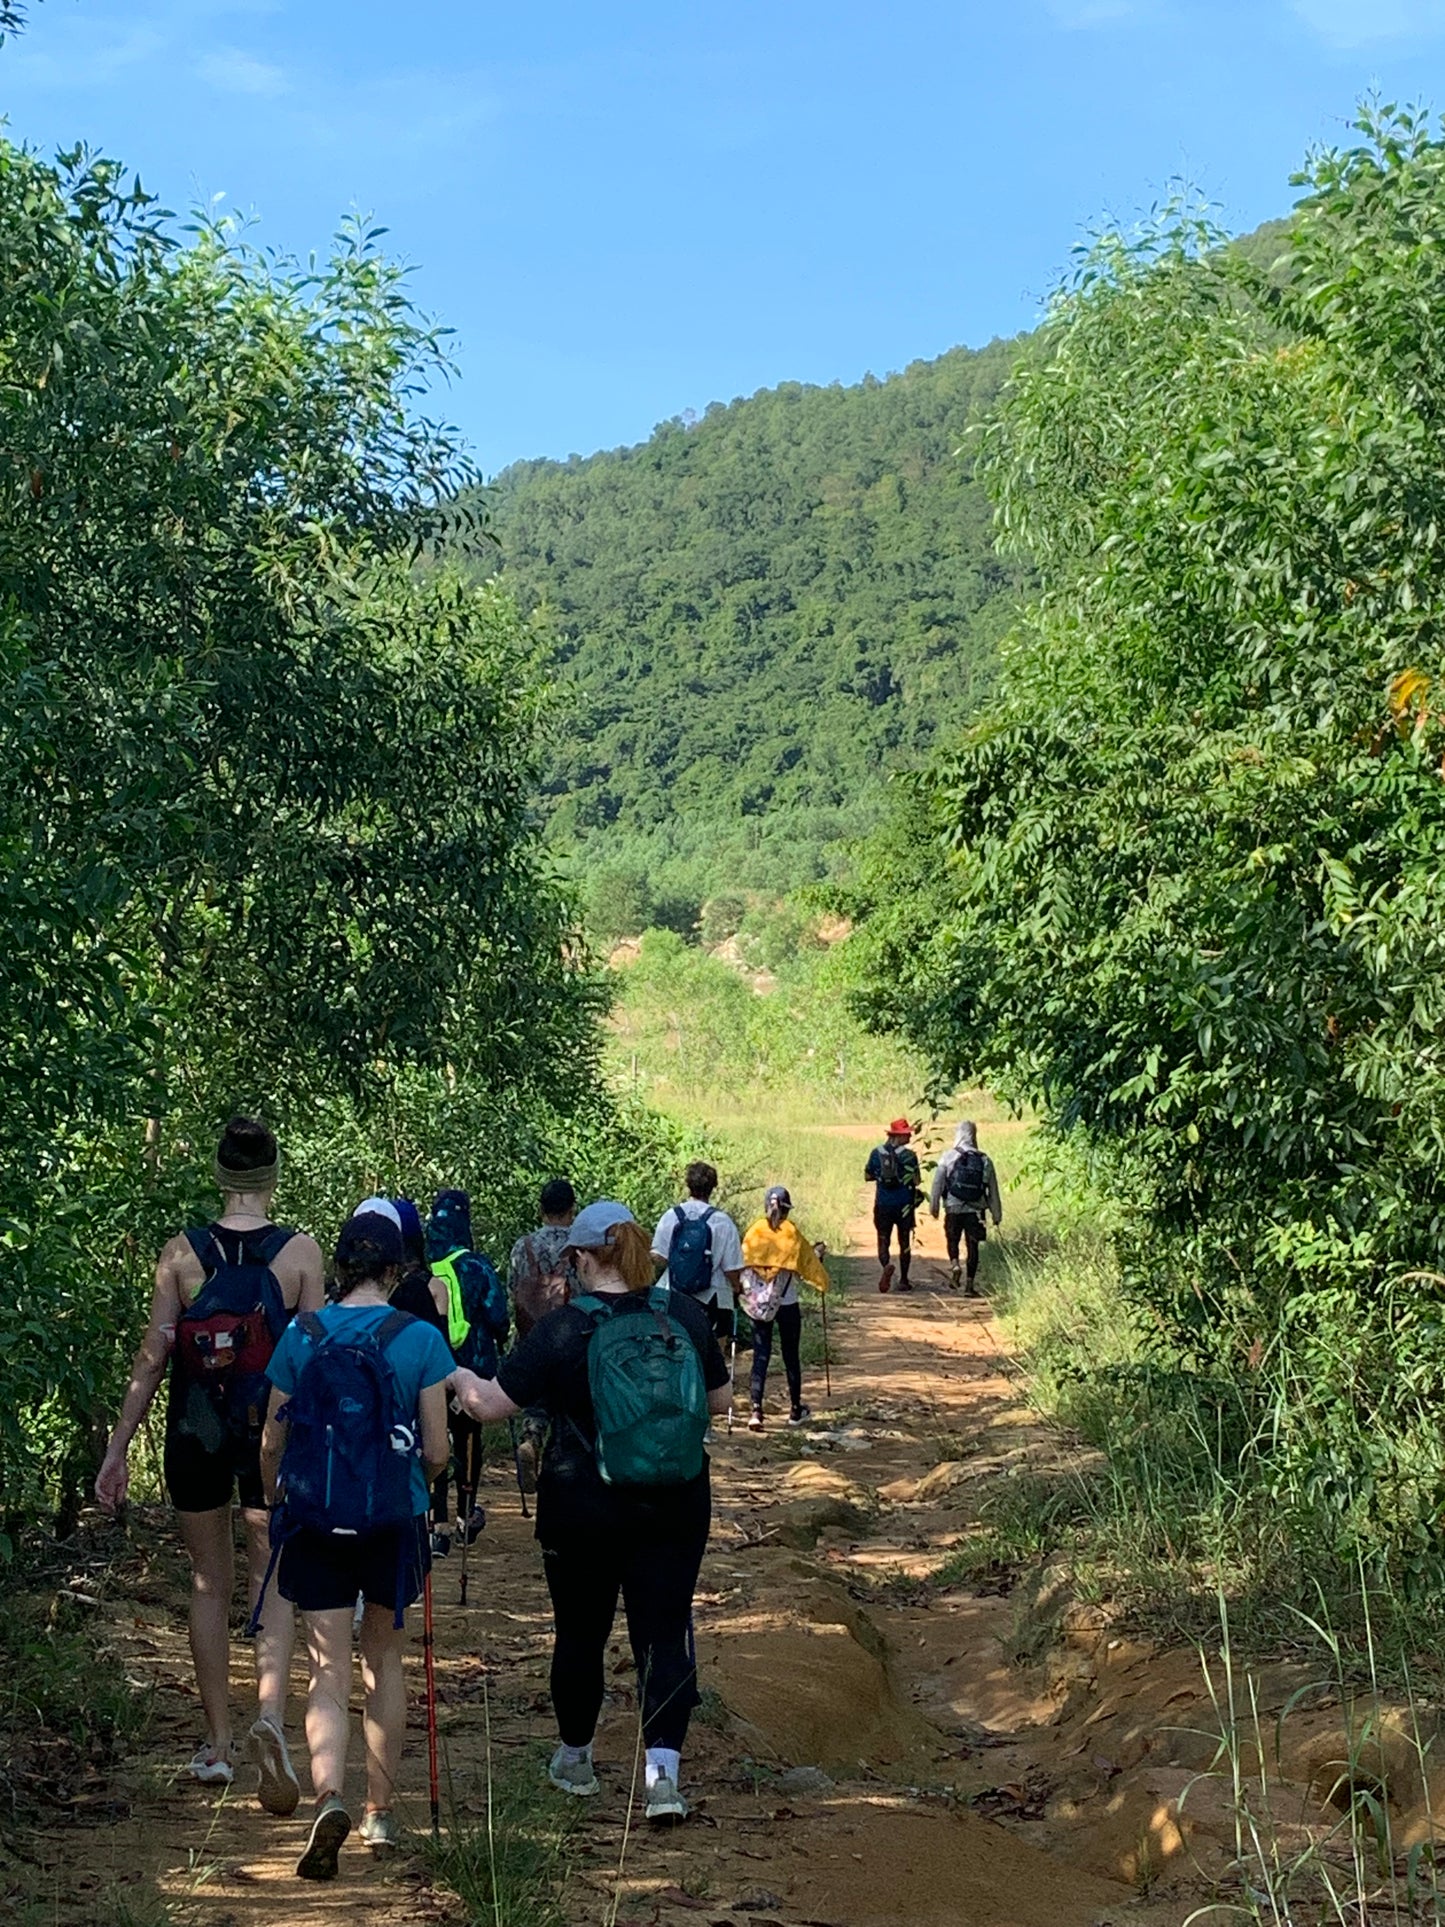 86A: Tóc Tiên 산, 대나무 산책로에서 파노라마 전망대까지